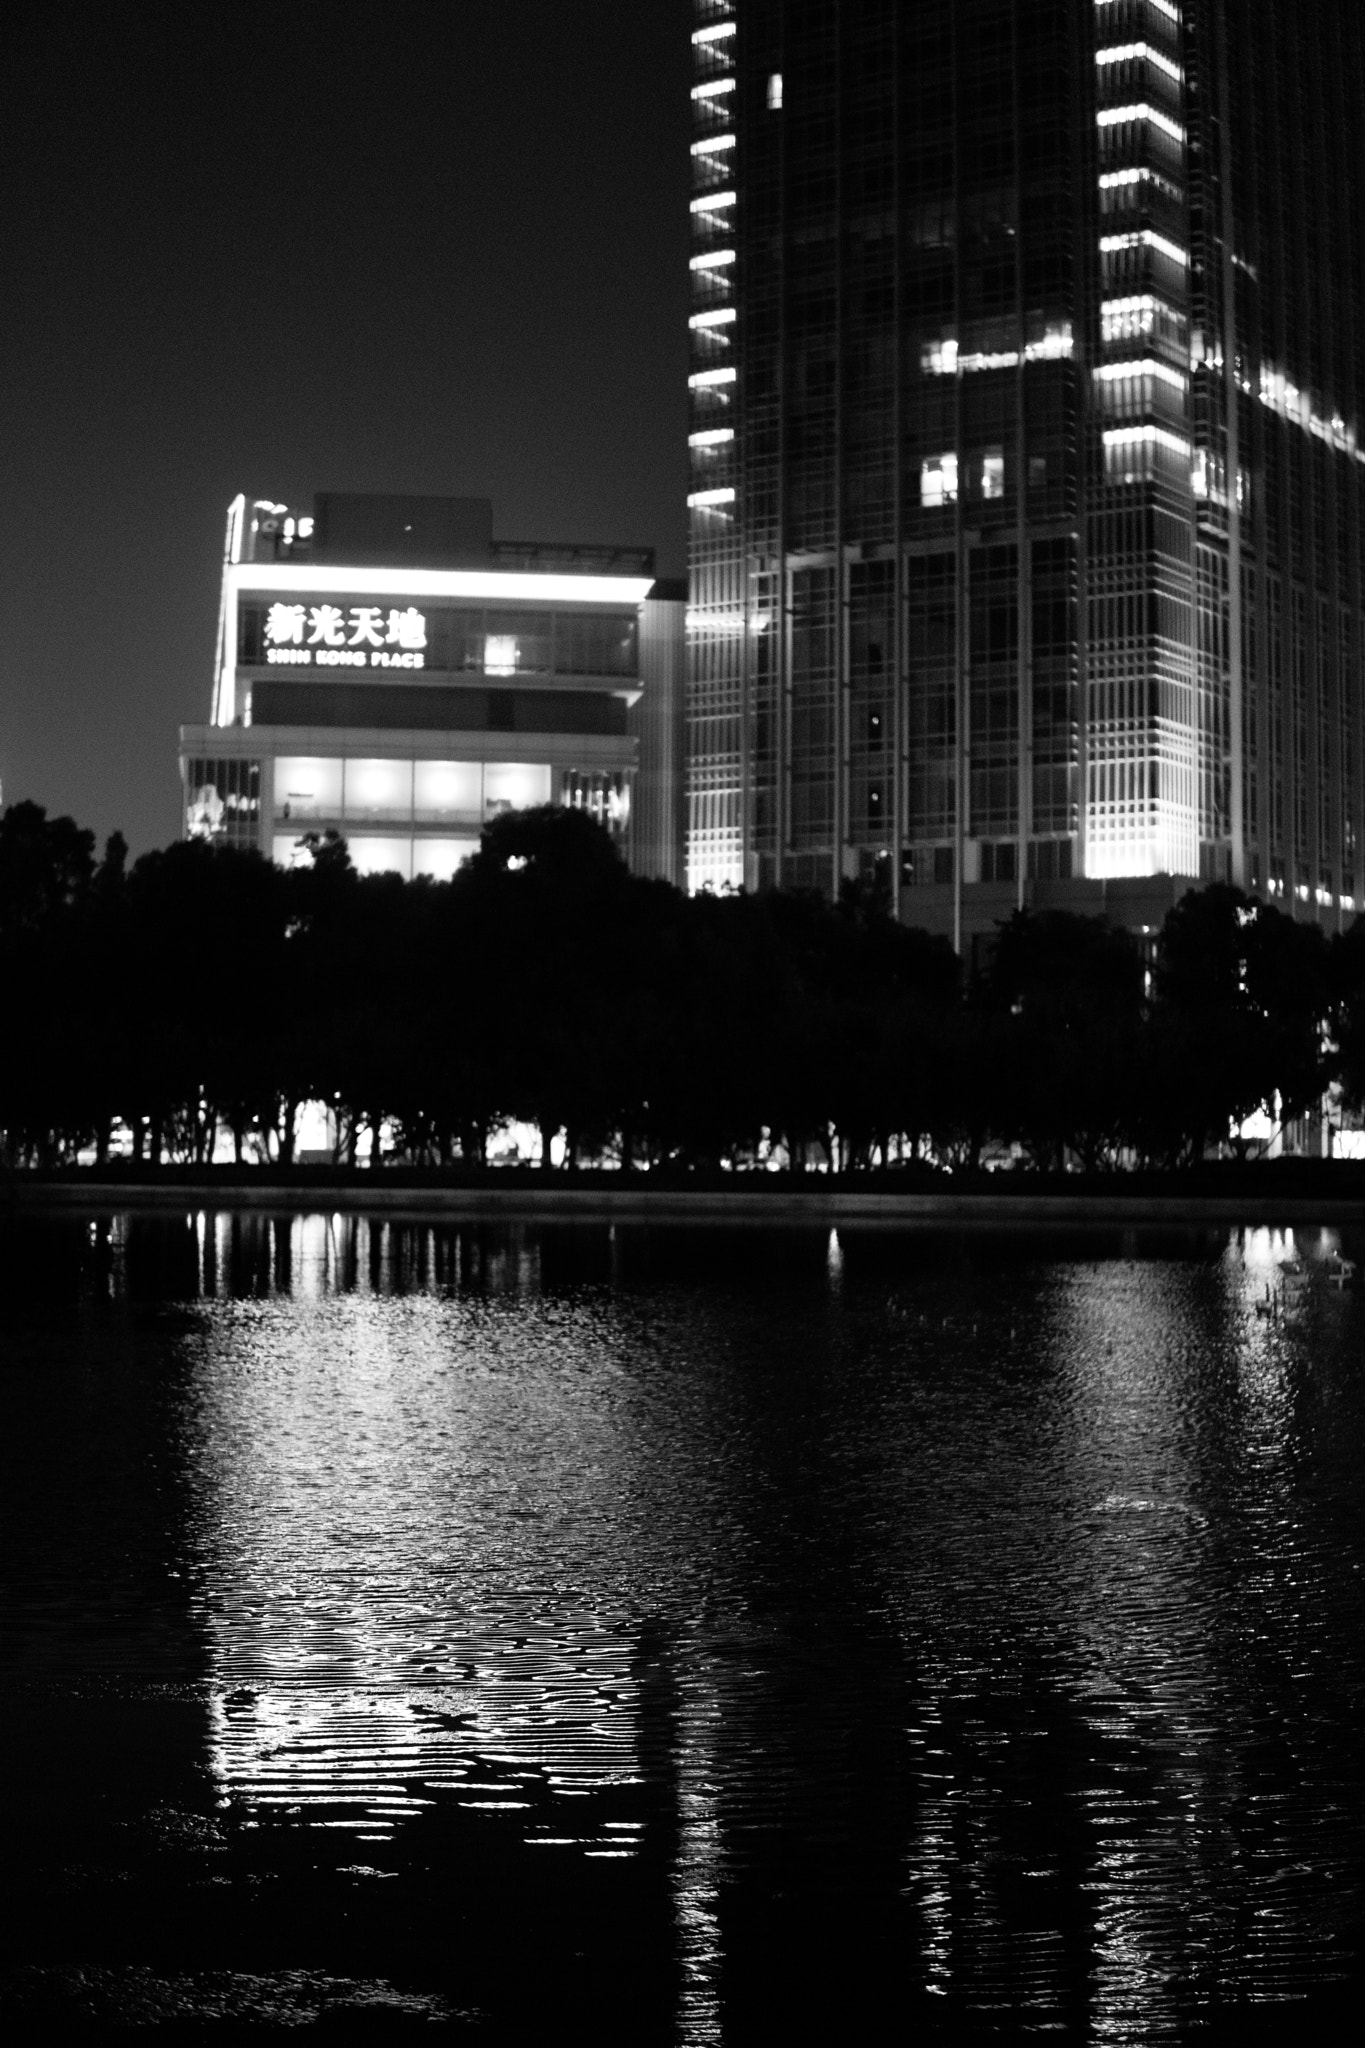 Sony a6000 + E 30mm F1.4 sample photo. China - suzhou photography